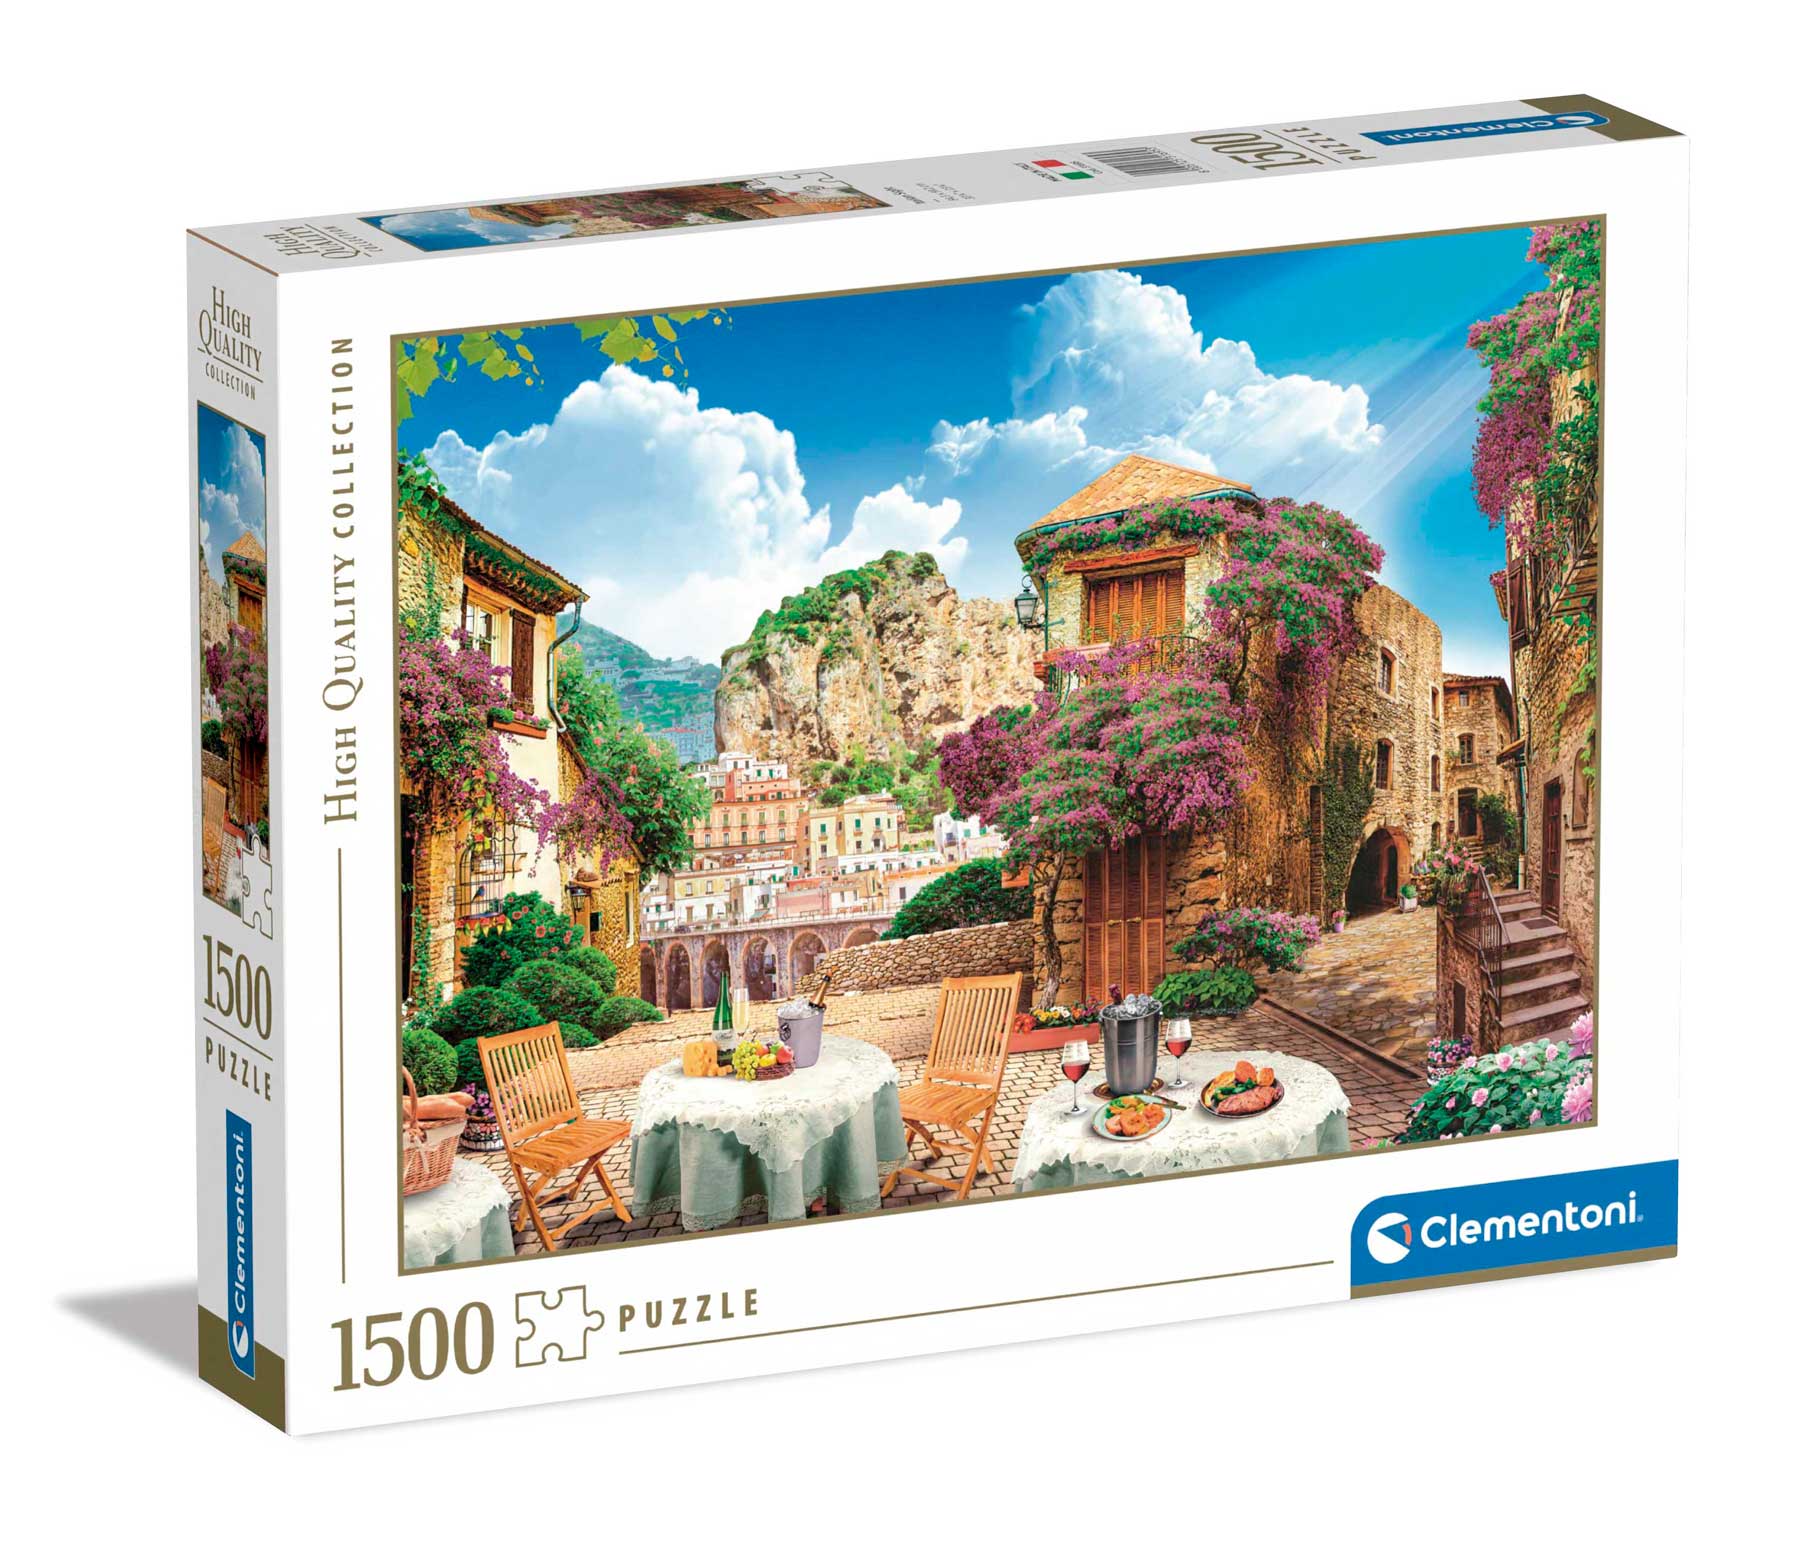 Comprar Puzzles de 500 a 1500 peças na nossa Loja online. Envios